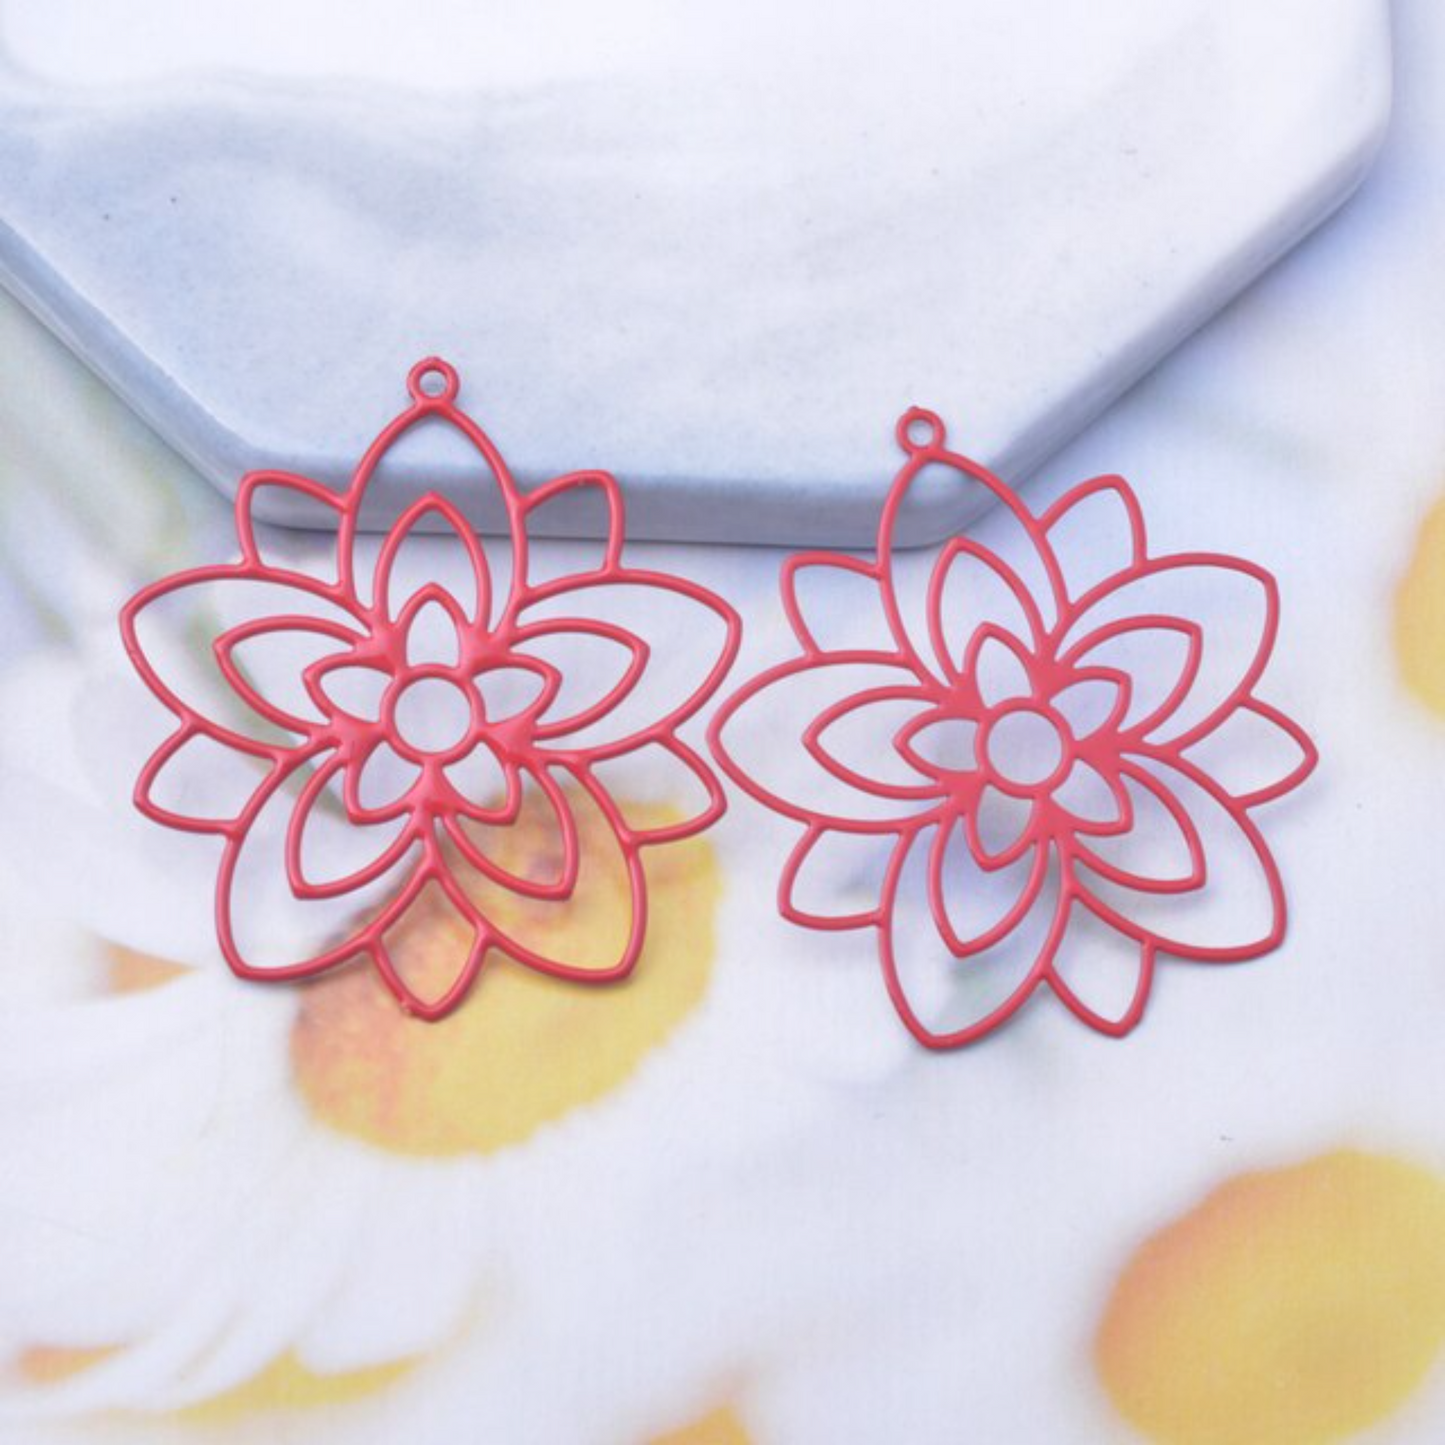 Floral Loop Filigree Earring Charm - 2ea (1 pair)